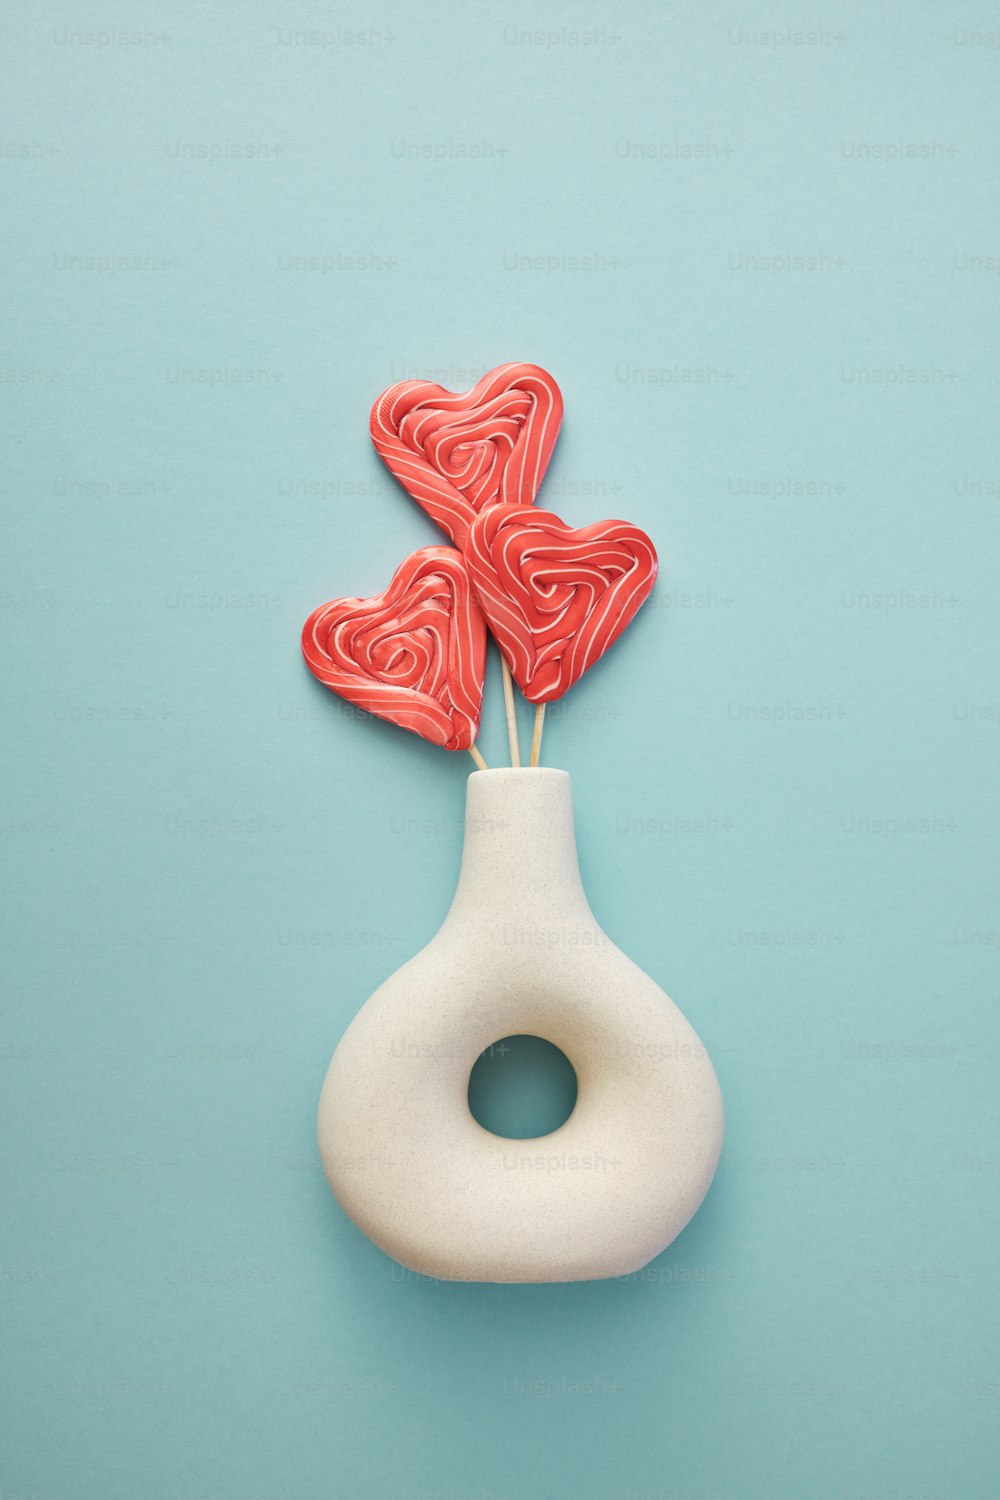 un vase blanc avec deux sucettes rouges en forme de cœur